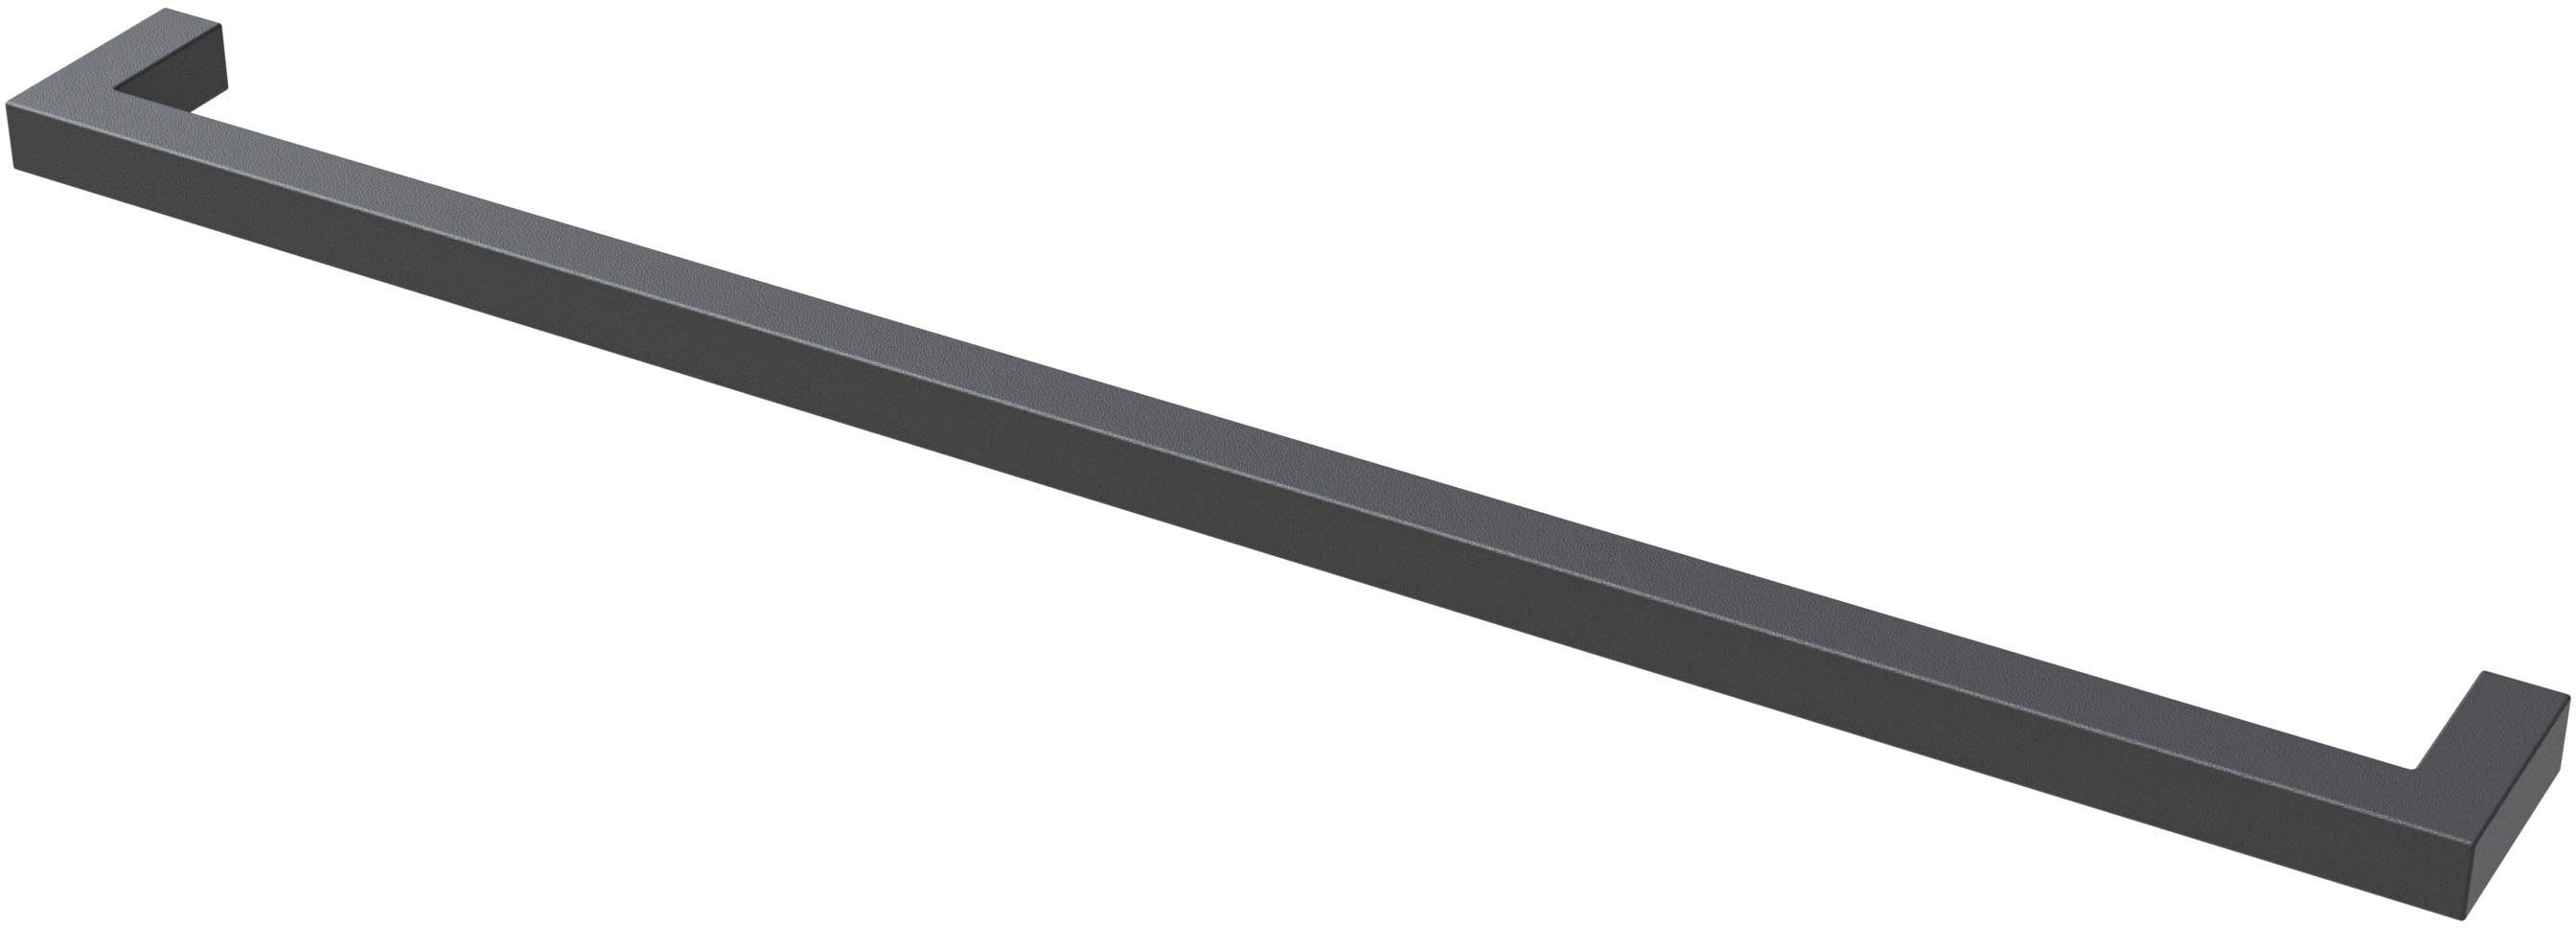 Saphir Griff Quickset 945 Möbel-Griff lang, Schwarz Matt, 33 cm breit, eckig (1-St), Schrankgriff, Bohrabstand 320 mm, Aluminium